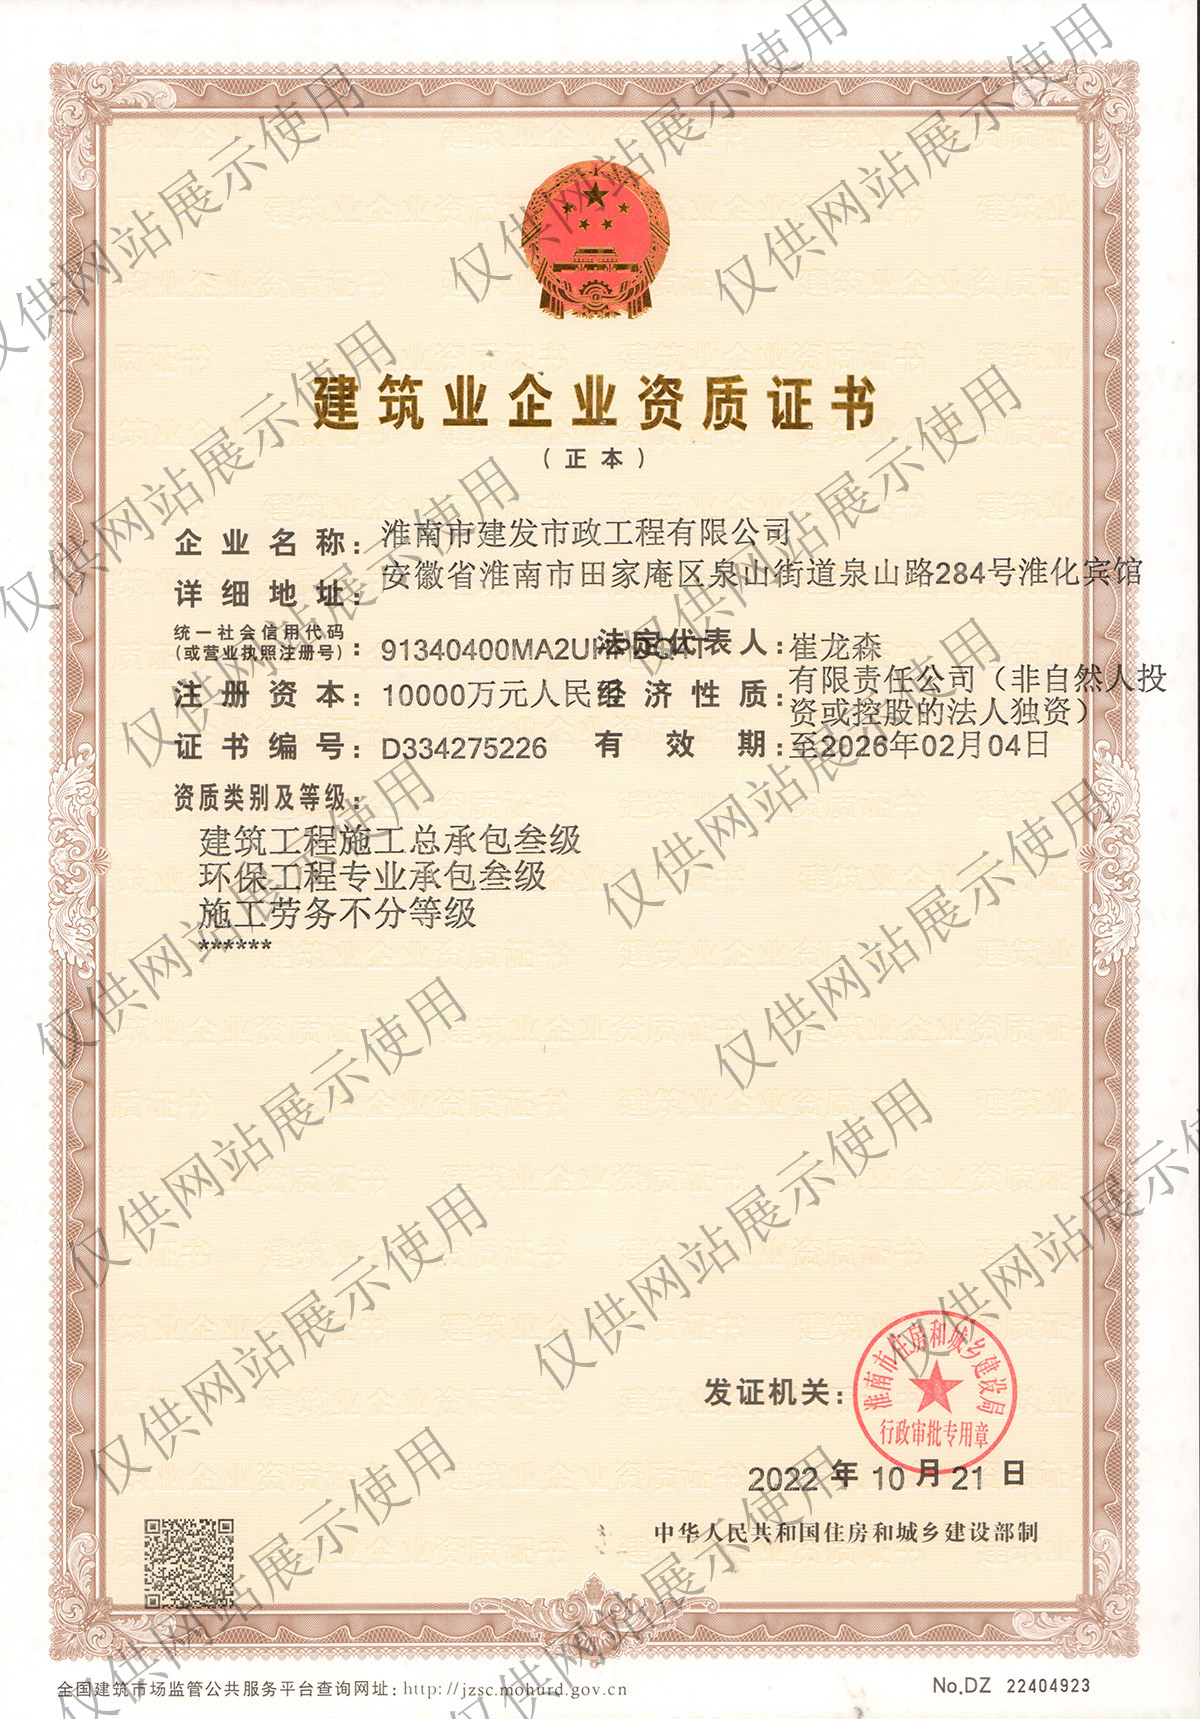 企业资质证书-正本(1)(1)_00